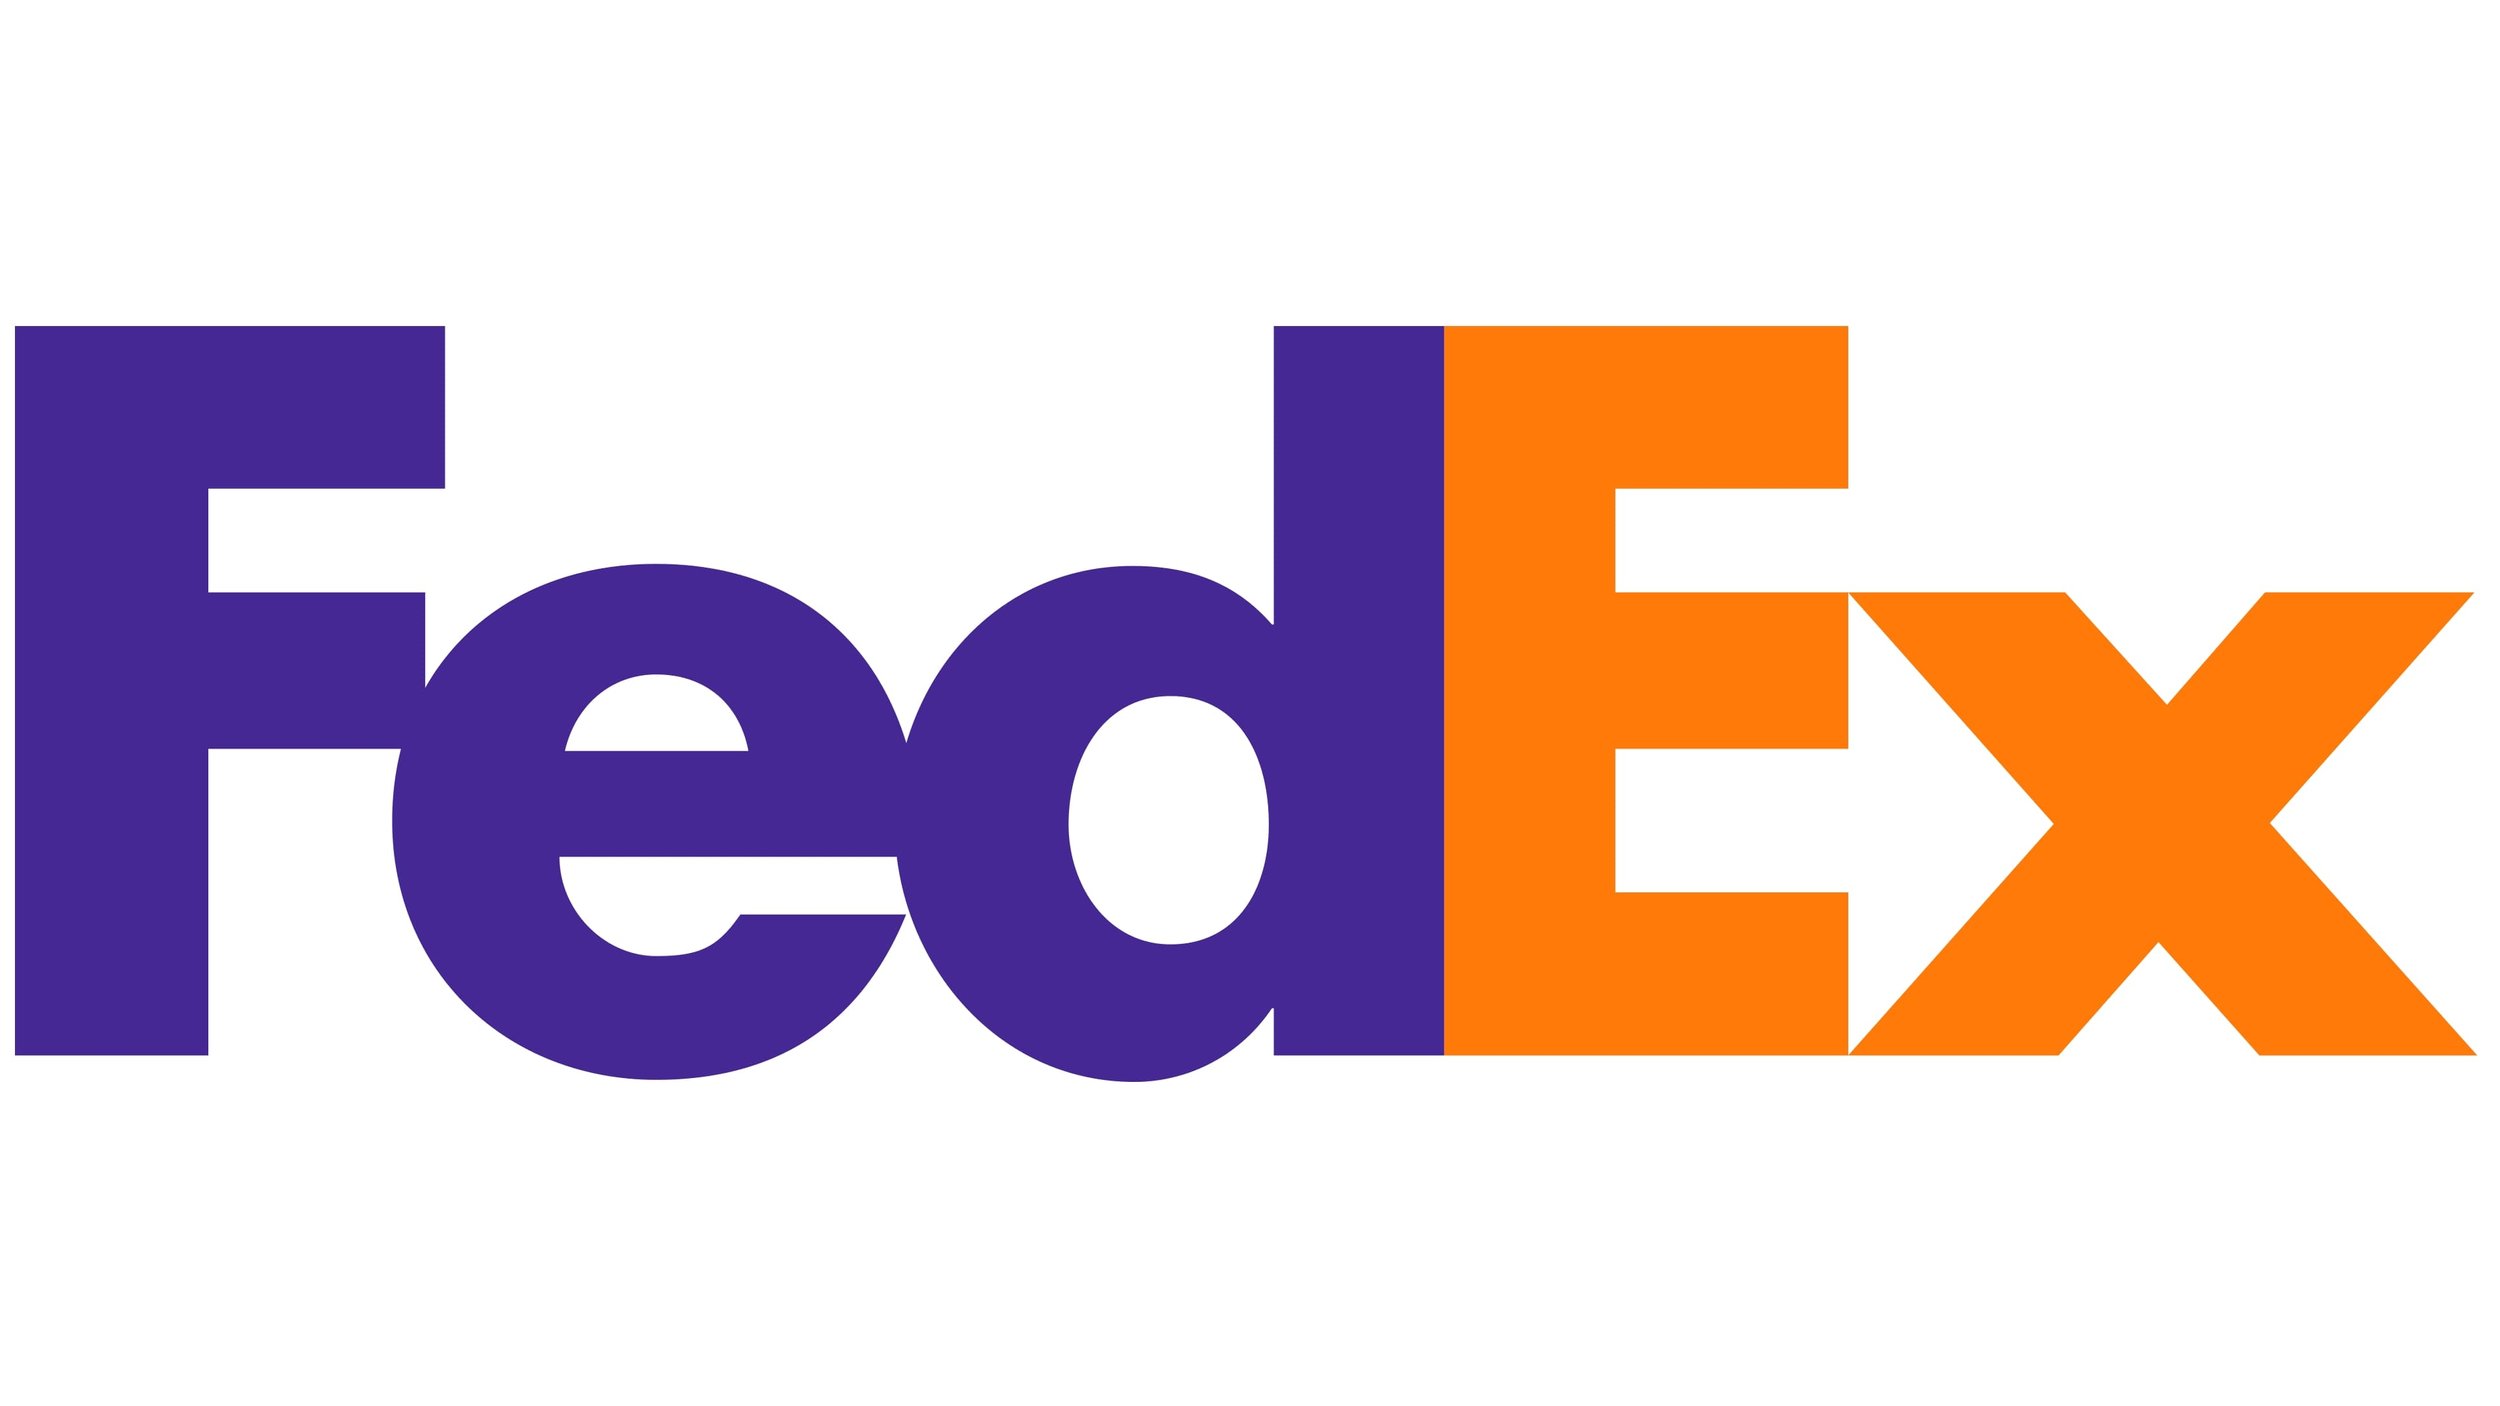 FedEx-logo.jpg